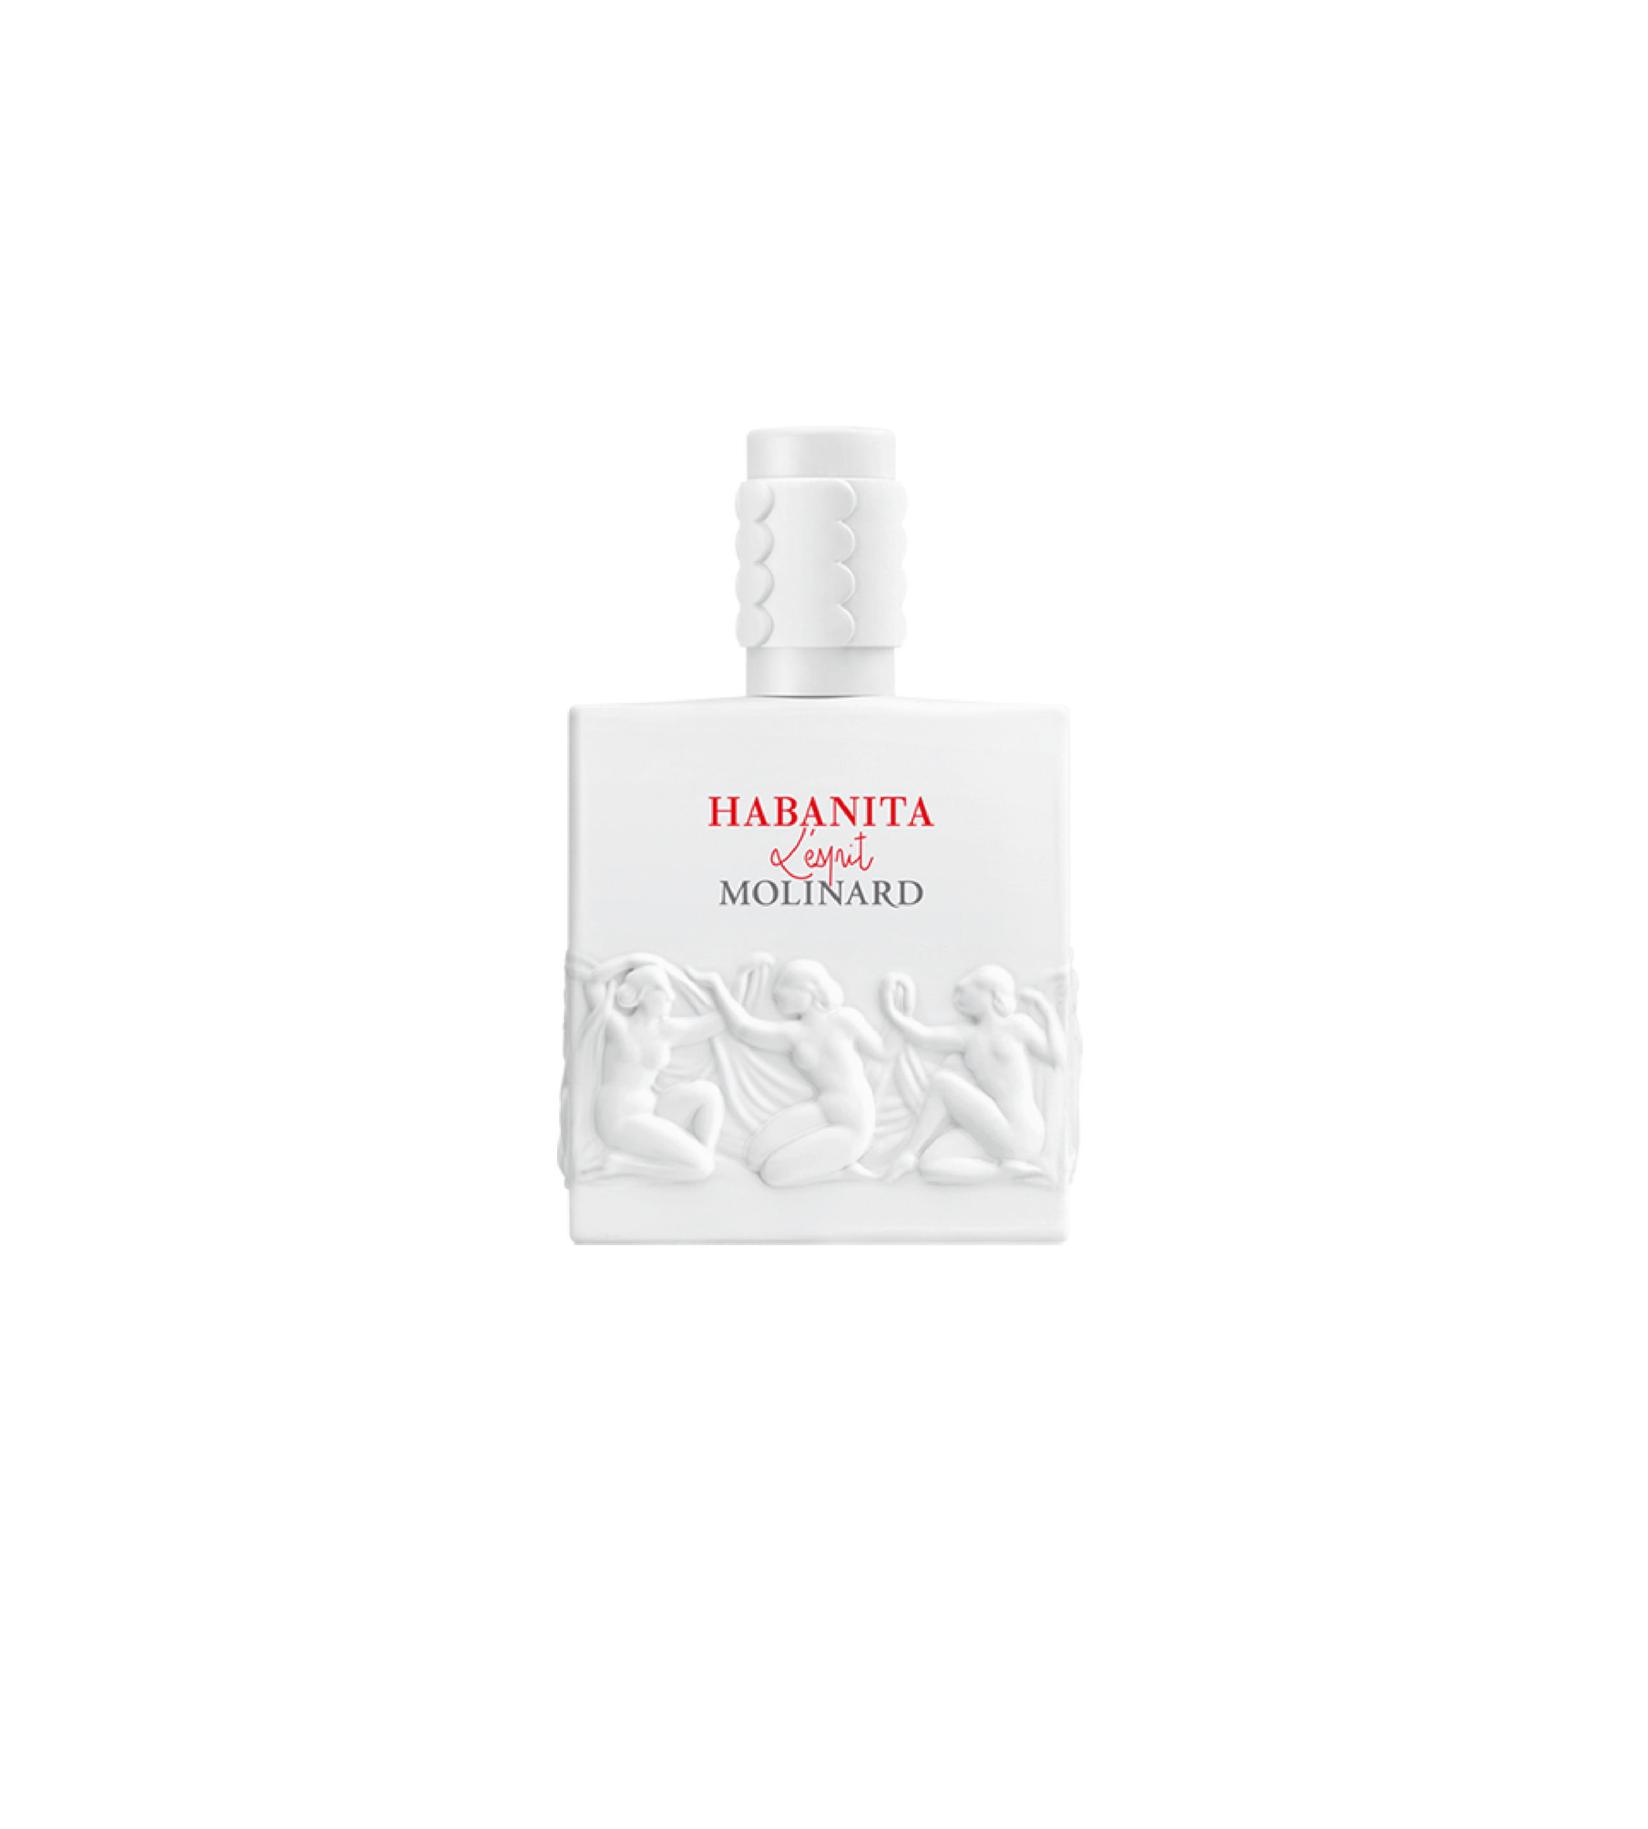 MOLINARD Ženski parfem Habanita L'Esprit 30ml